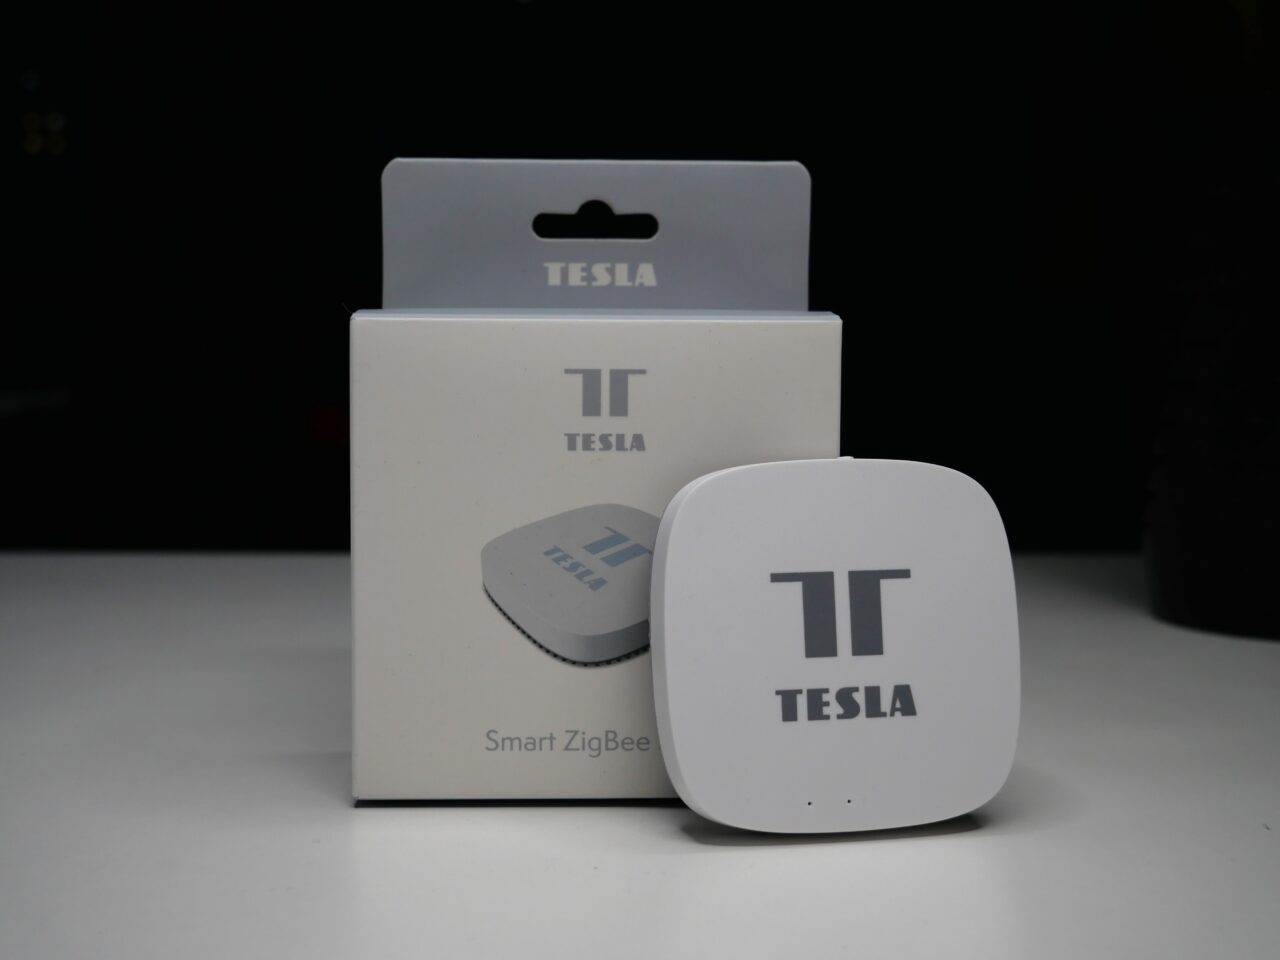 Stacja centralna firmy Tesla oznaczony logo "T" z opakowaniem na ciemnym tle.